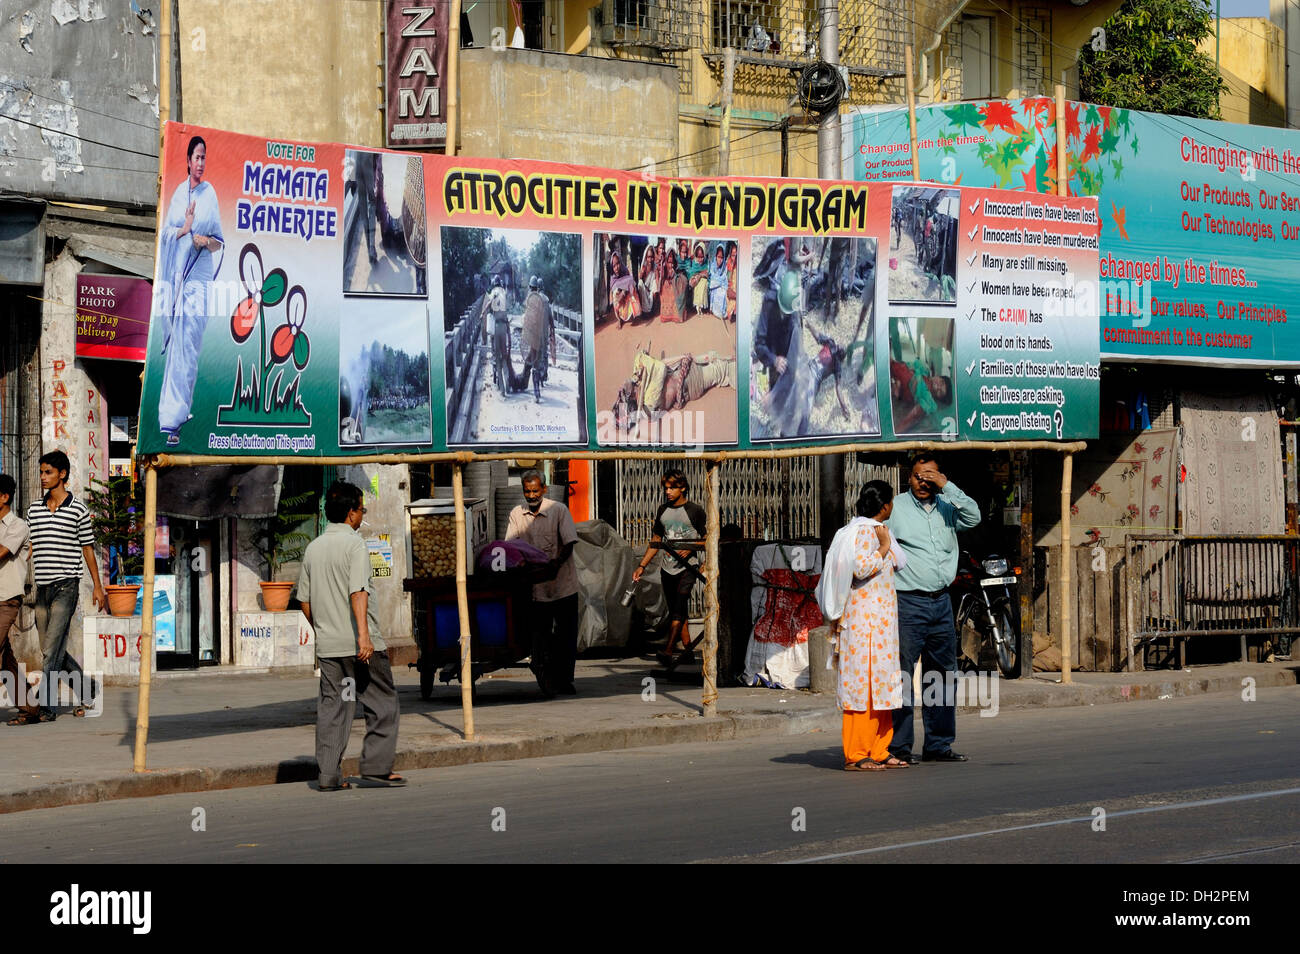 Les panneaux électoraux par Mamata Banerjee de TMC Partie montrant des atrocités à Nandigram, Park Circus à Calcutta Kolkata West Bengale Inde Asie Banque D'Images